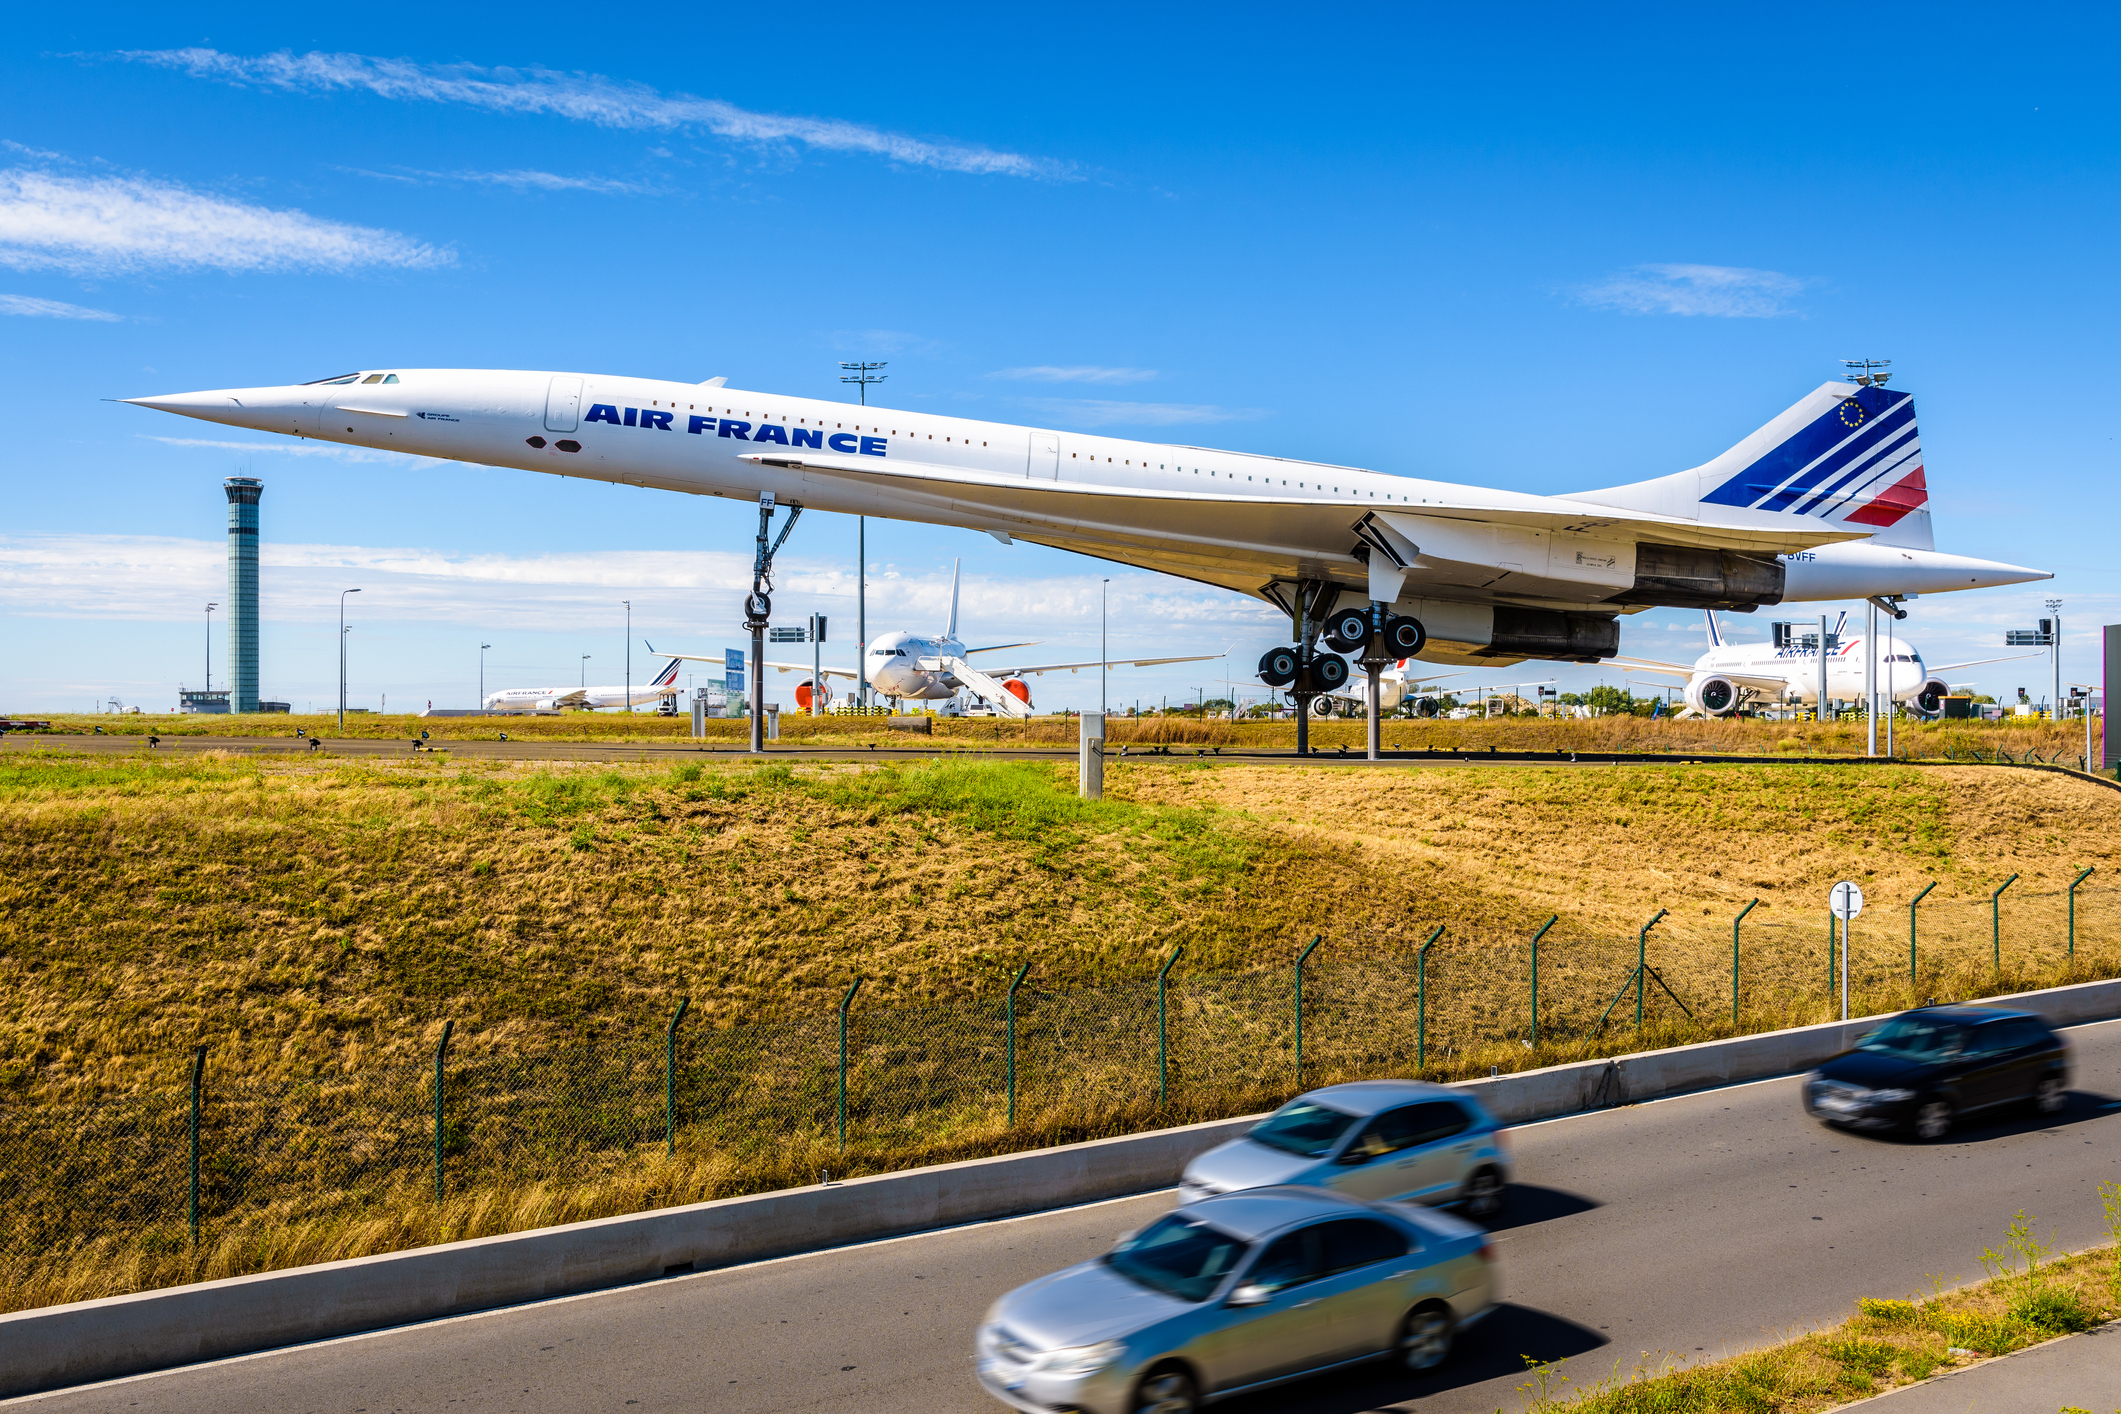 En Air France Concorde udstillet i Paris Charles de Gaulle Airport med andre Air France-fly i baggrunden.